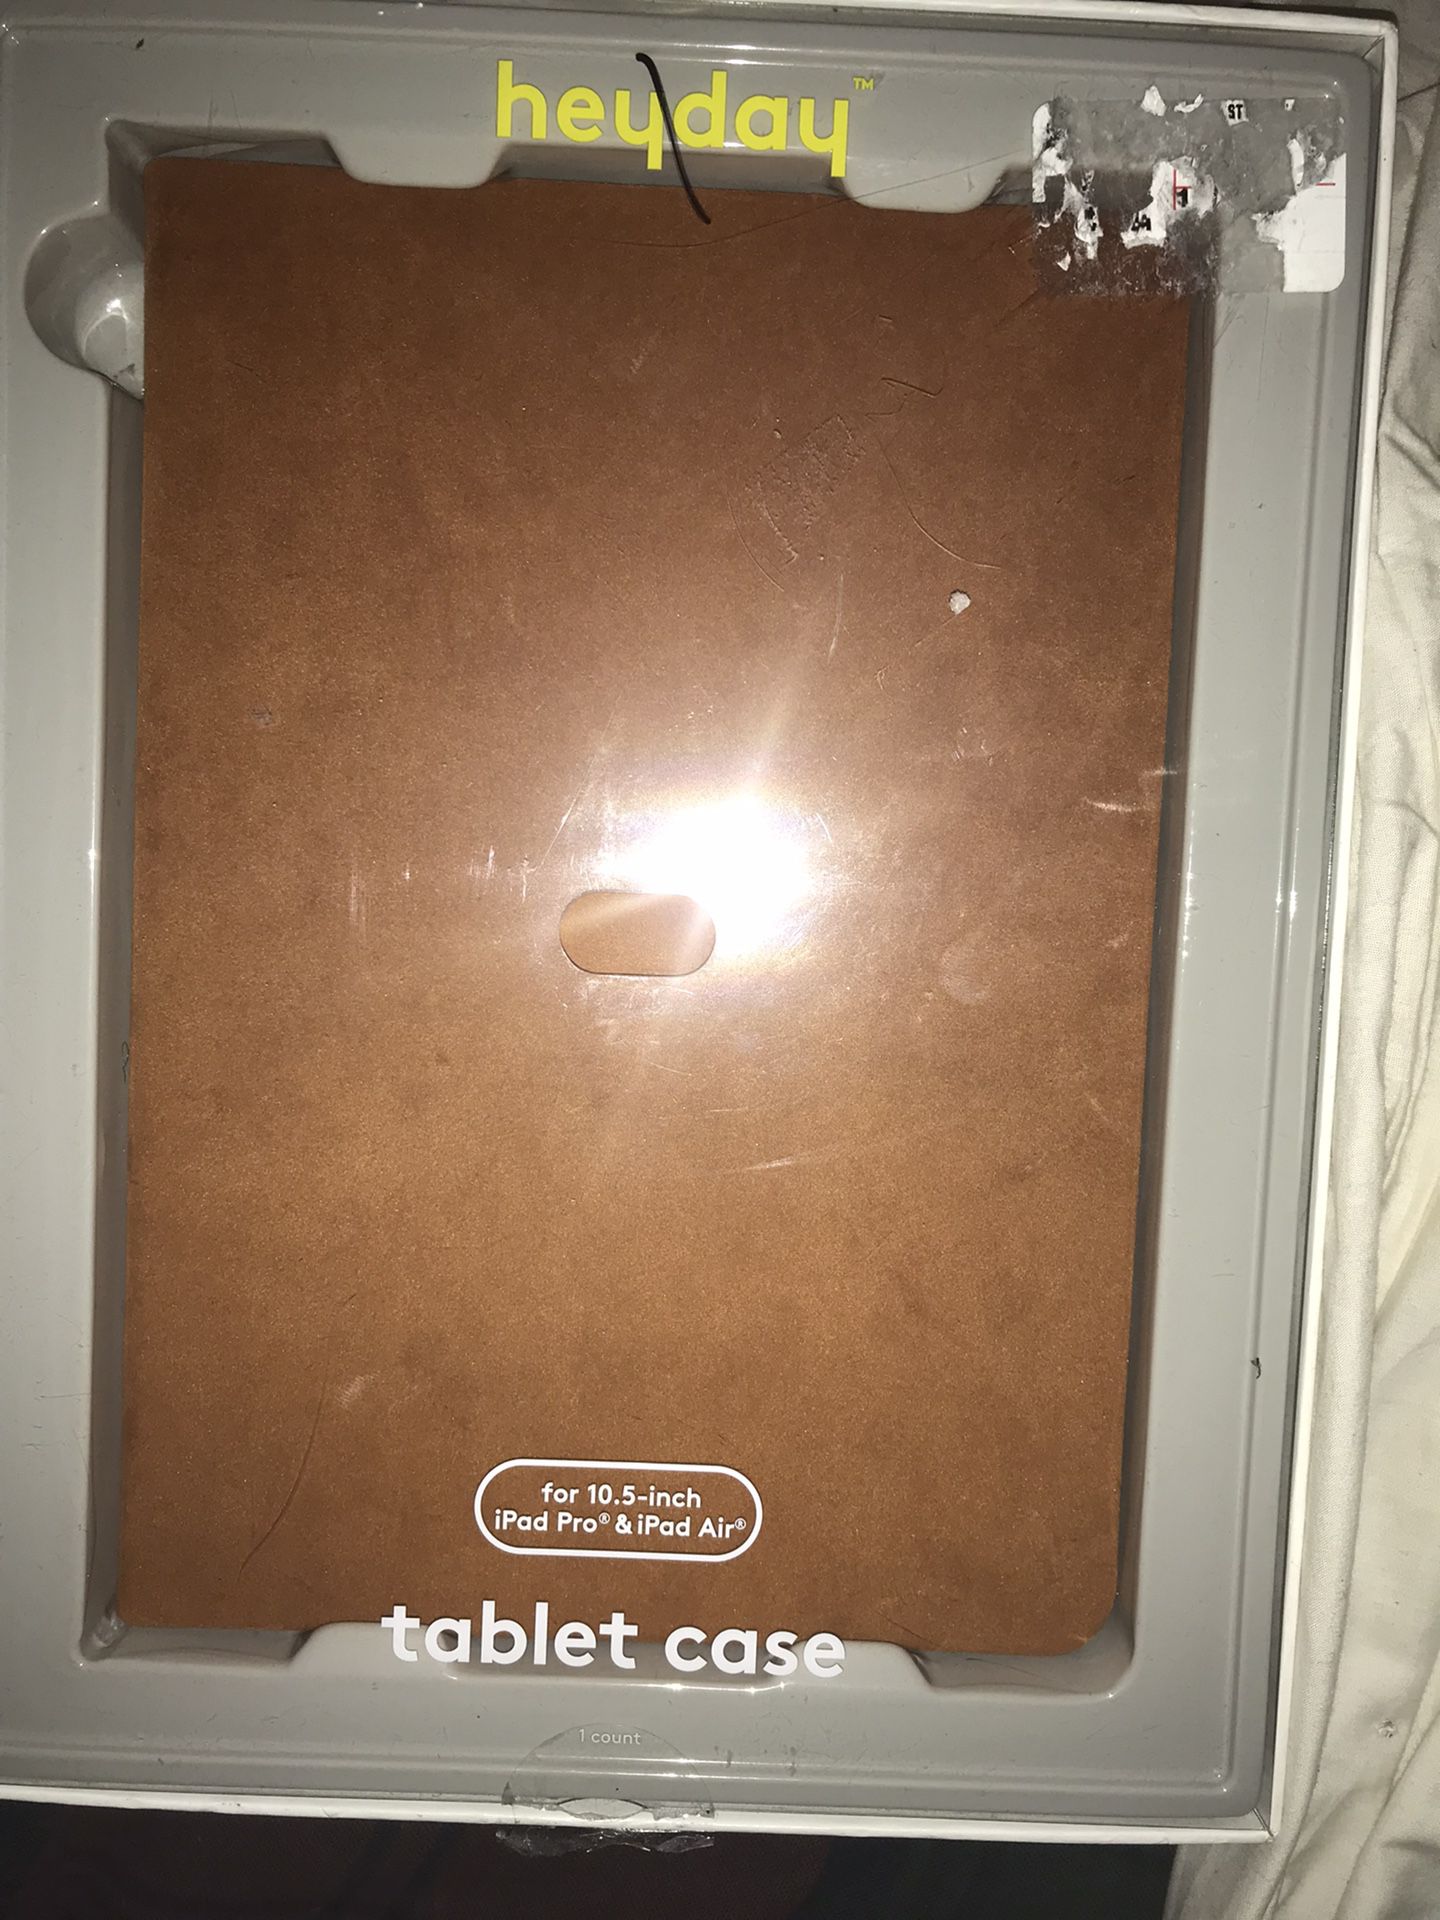 heyday Apple iPad Pro 10.5 inch Tan Casefor iPad Pro & iPad Air NEW